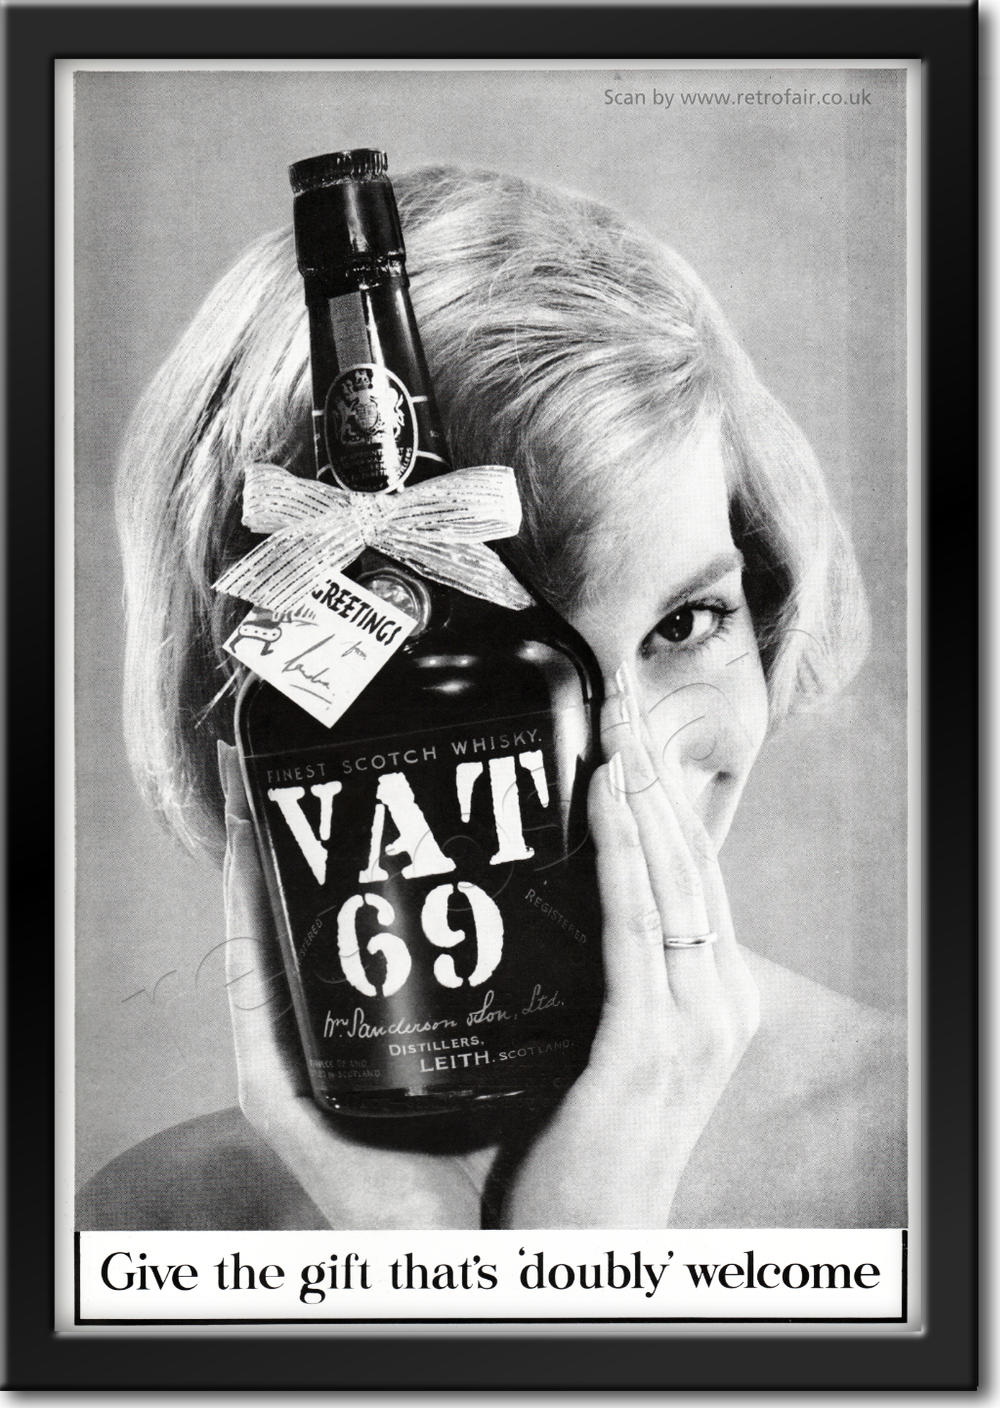 1960 VAT 69 Scotch Whisky - framed preview vintage ad